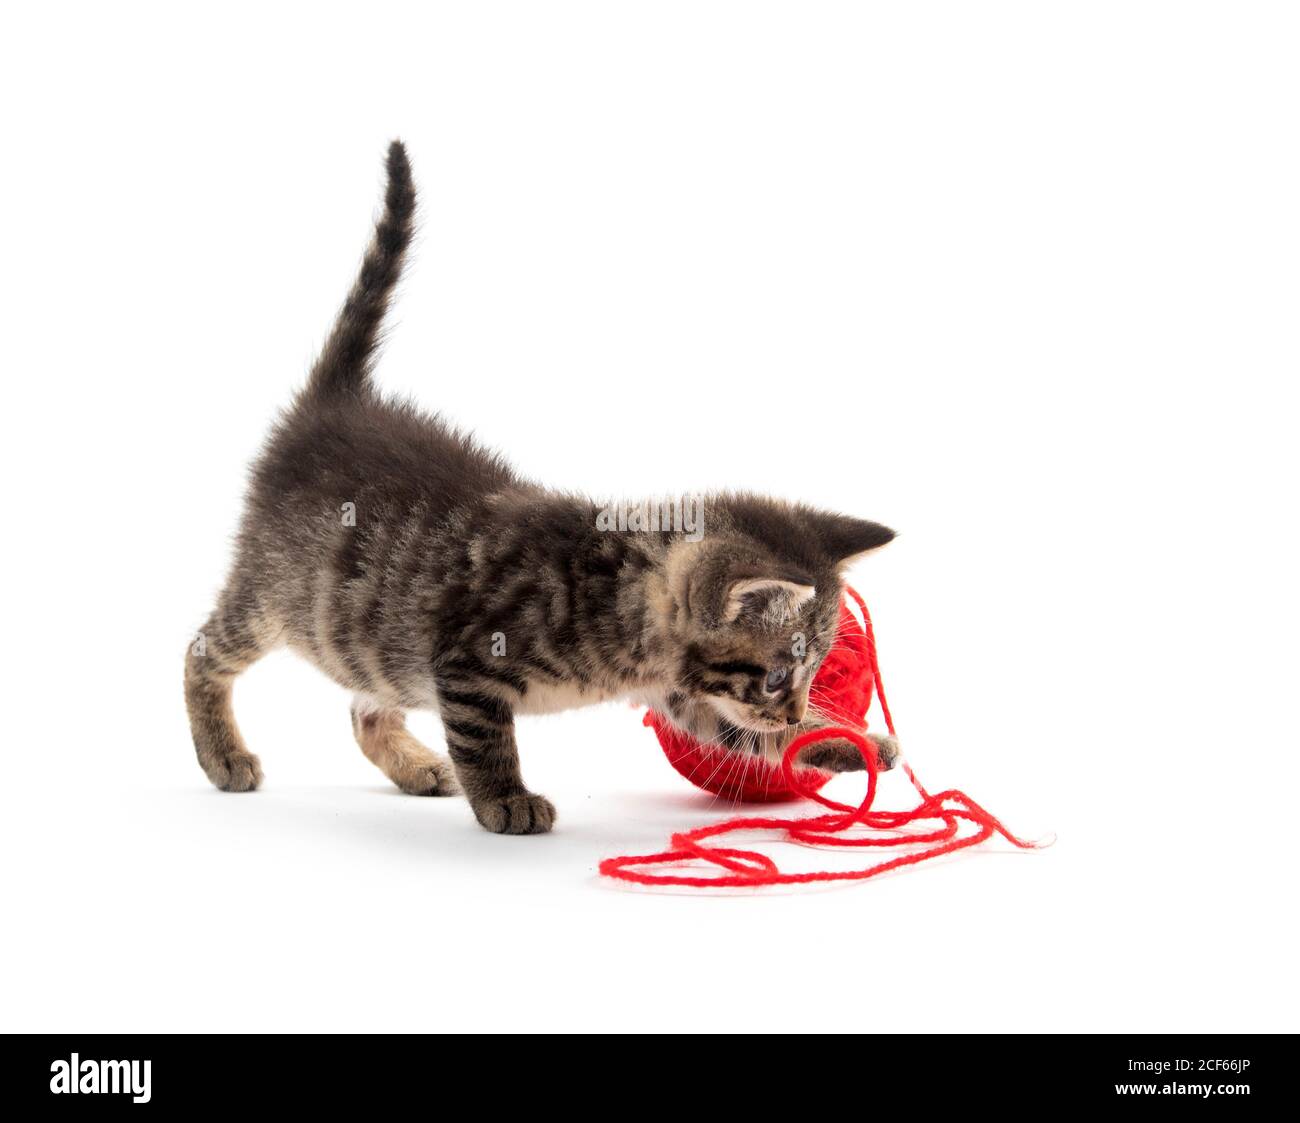 Simpatico cucciolo tabby che gioca con una palla di rosso filo isolato su fondo bianco Foto Stock